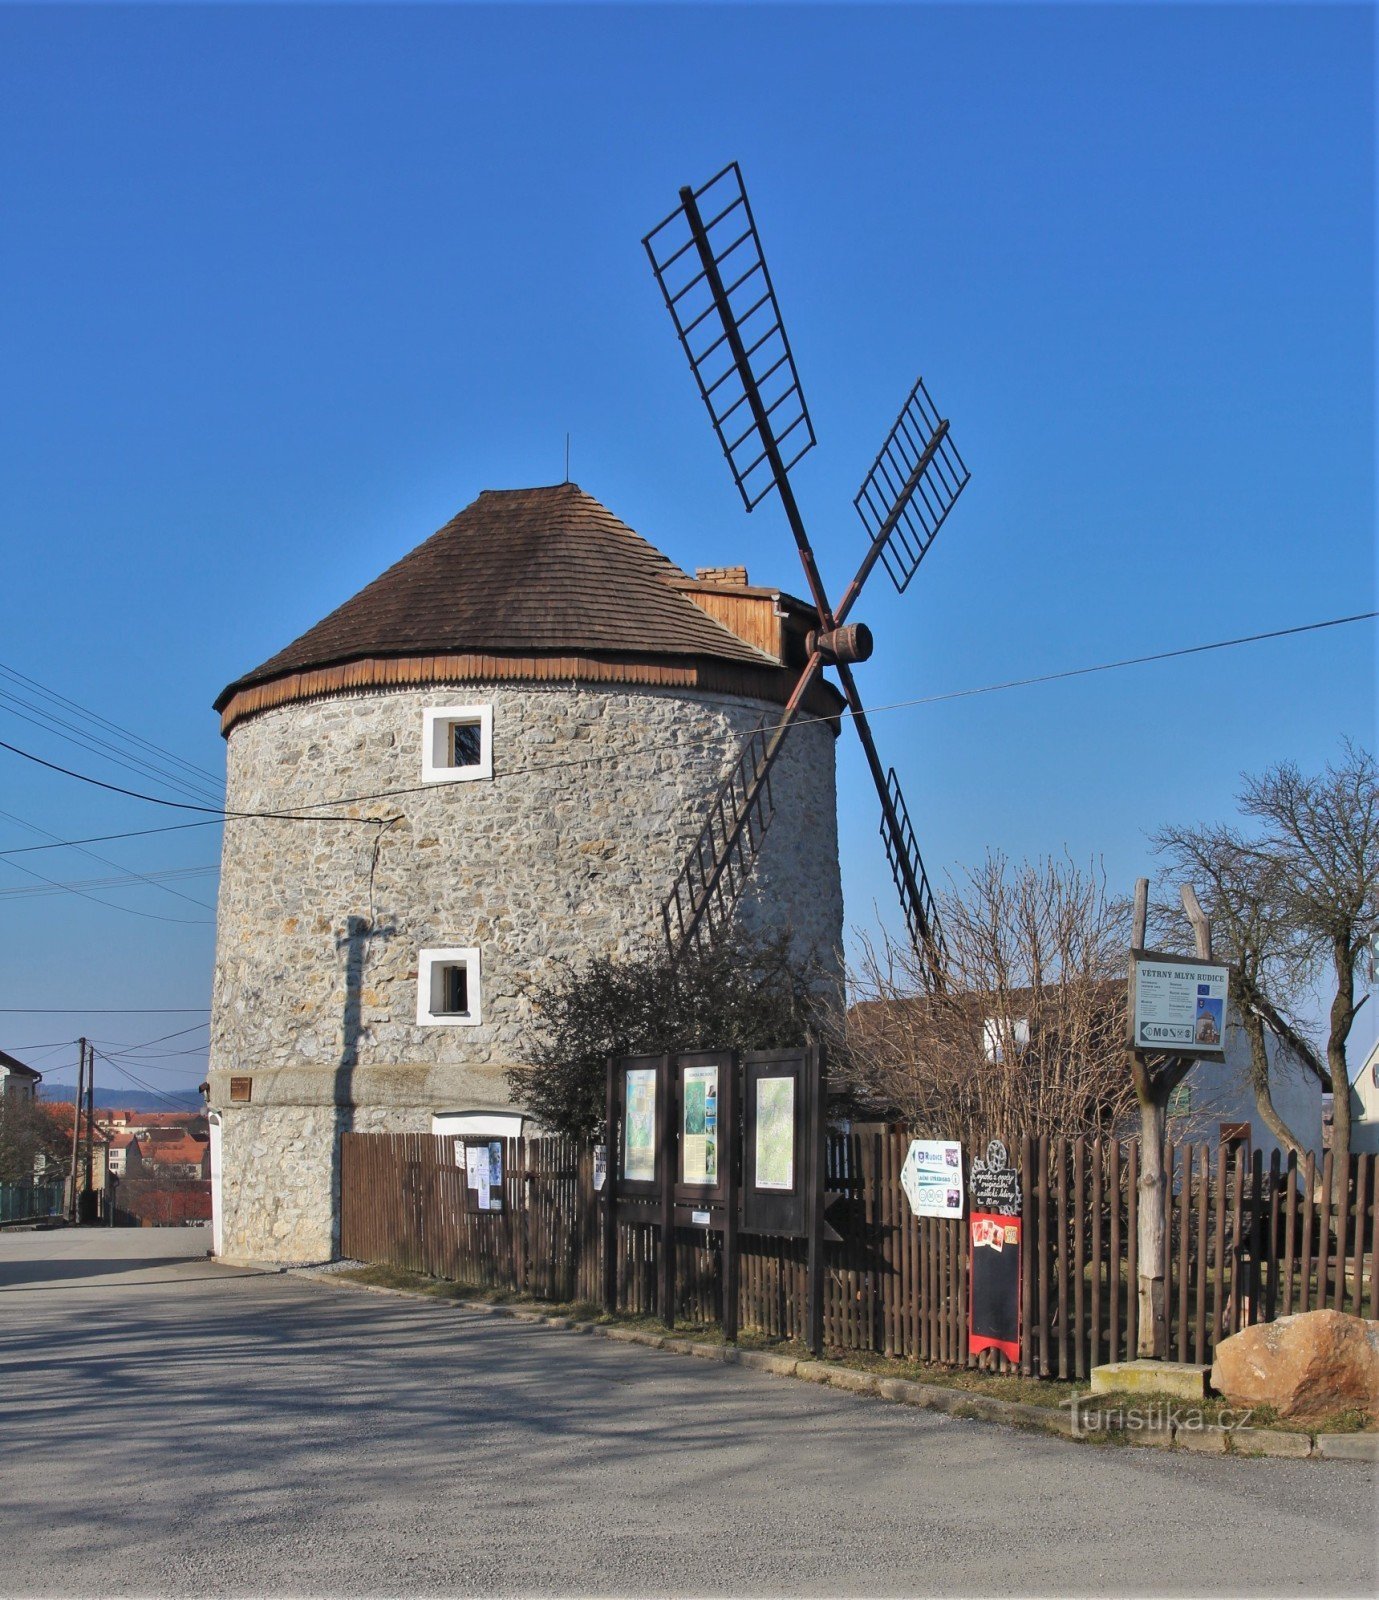 Rudice - Windmill Information Center